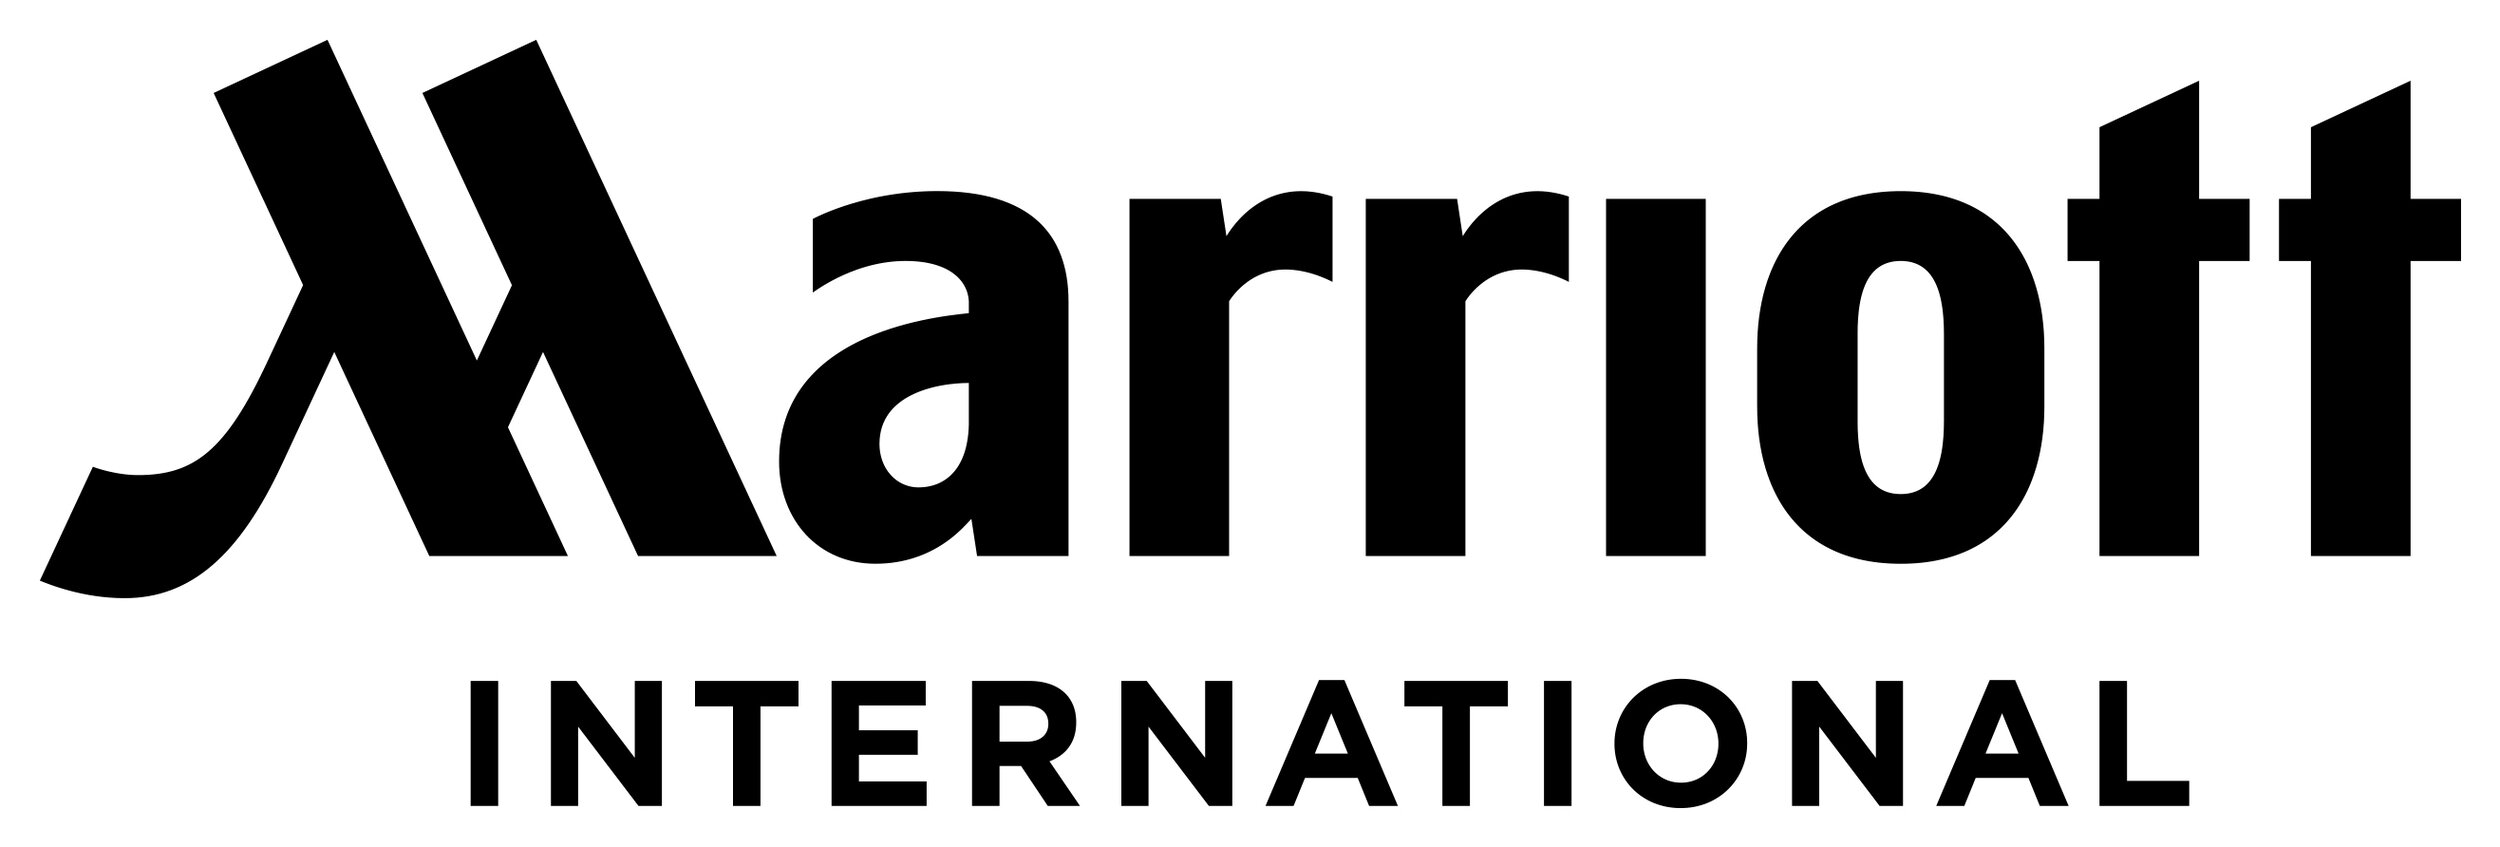 Marriott International_logo2.jpg